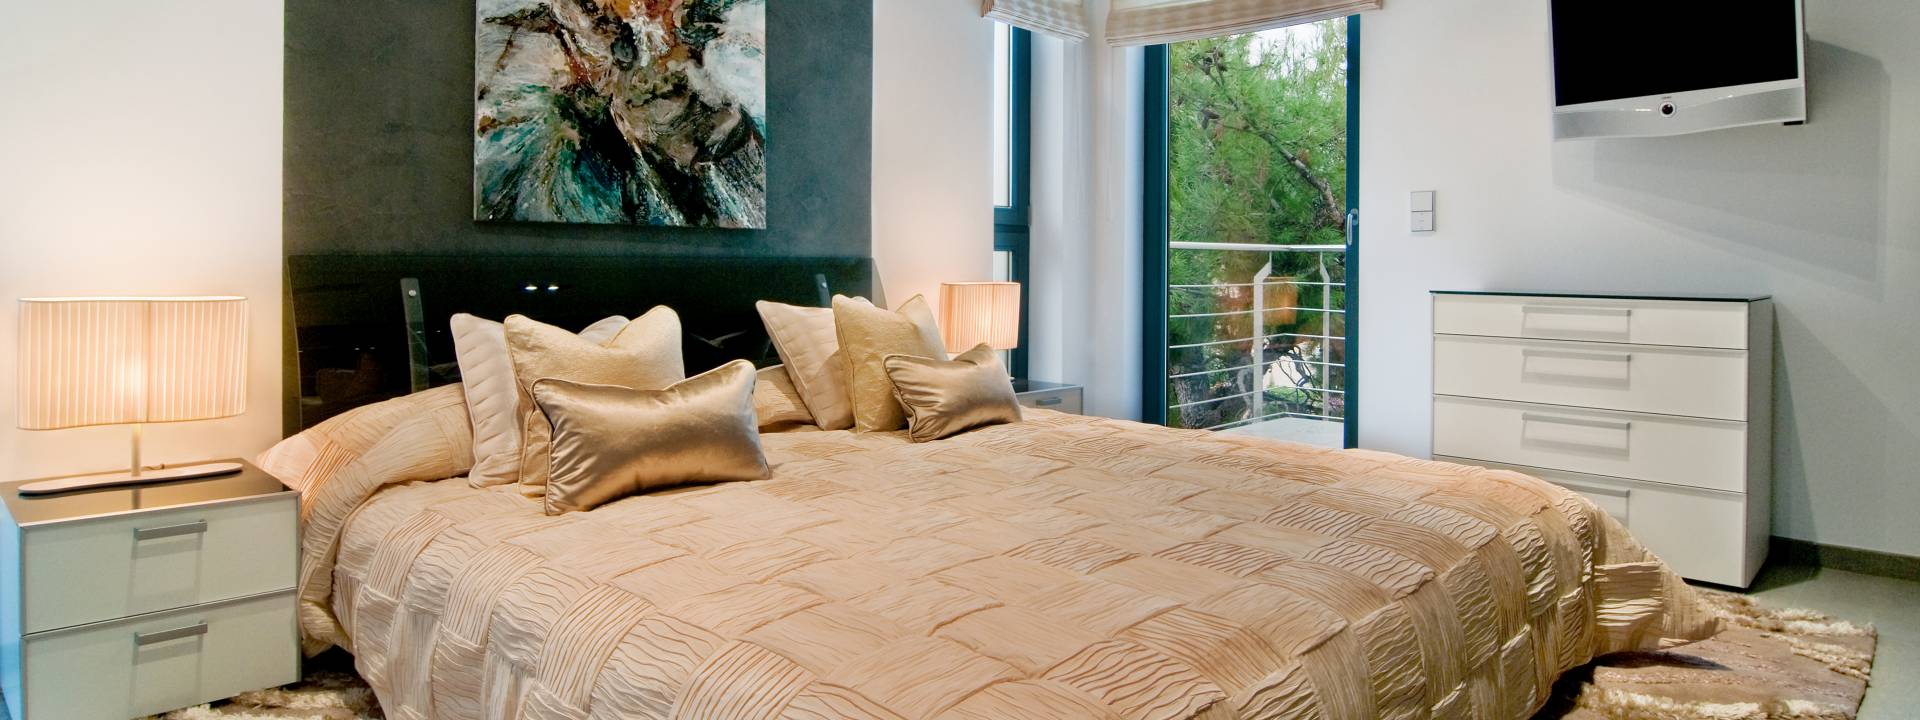 Luxury Minimalist villa.  Contemporary bedroom. 